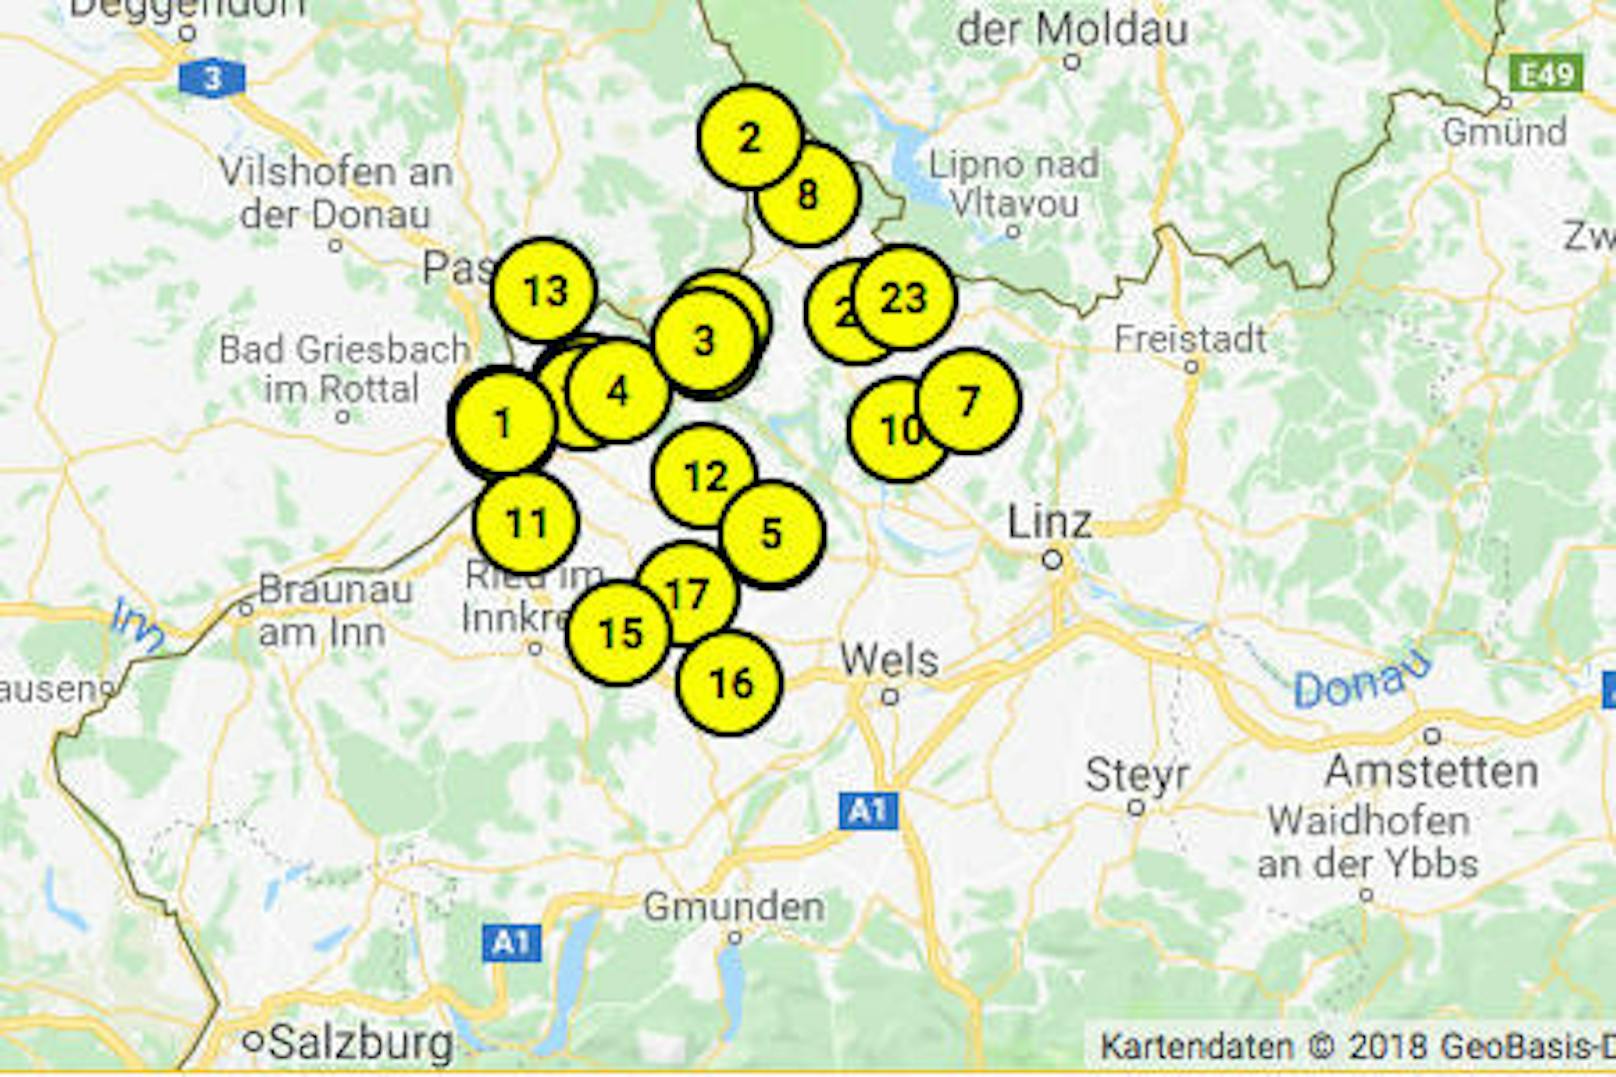 Laut ÖAMTC sind an der Grenze zu Bayern die teuersten Tankstellen (Karte zeigt Diesel-Preis an) in OÖ.